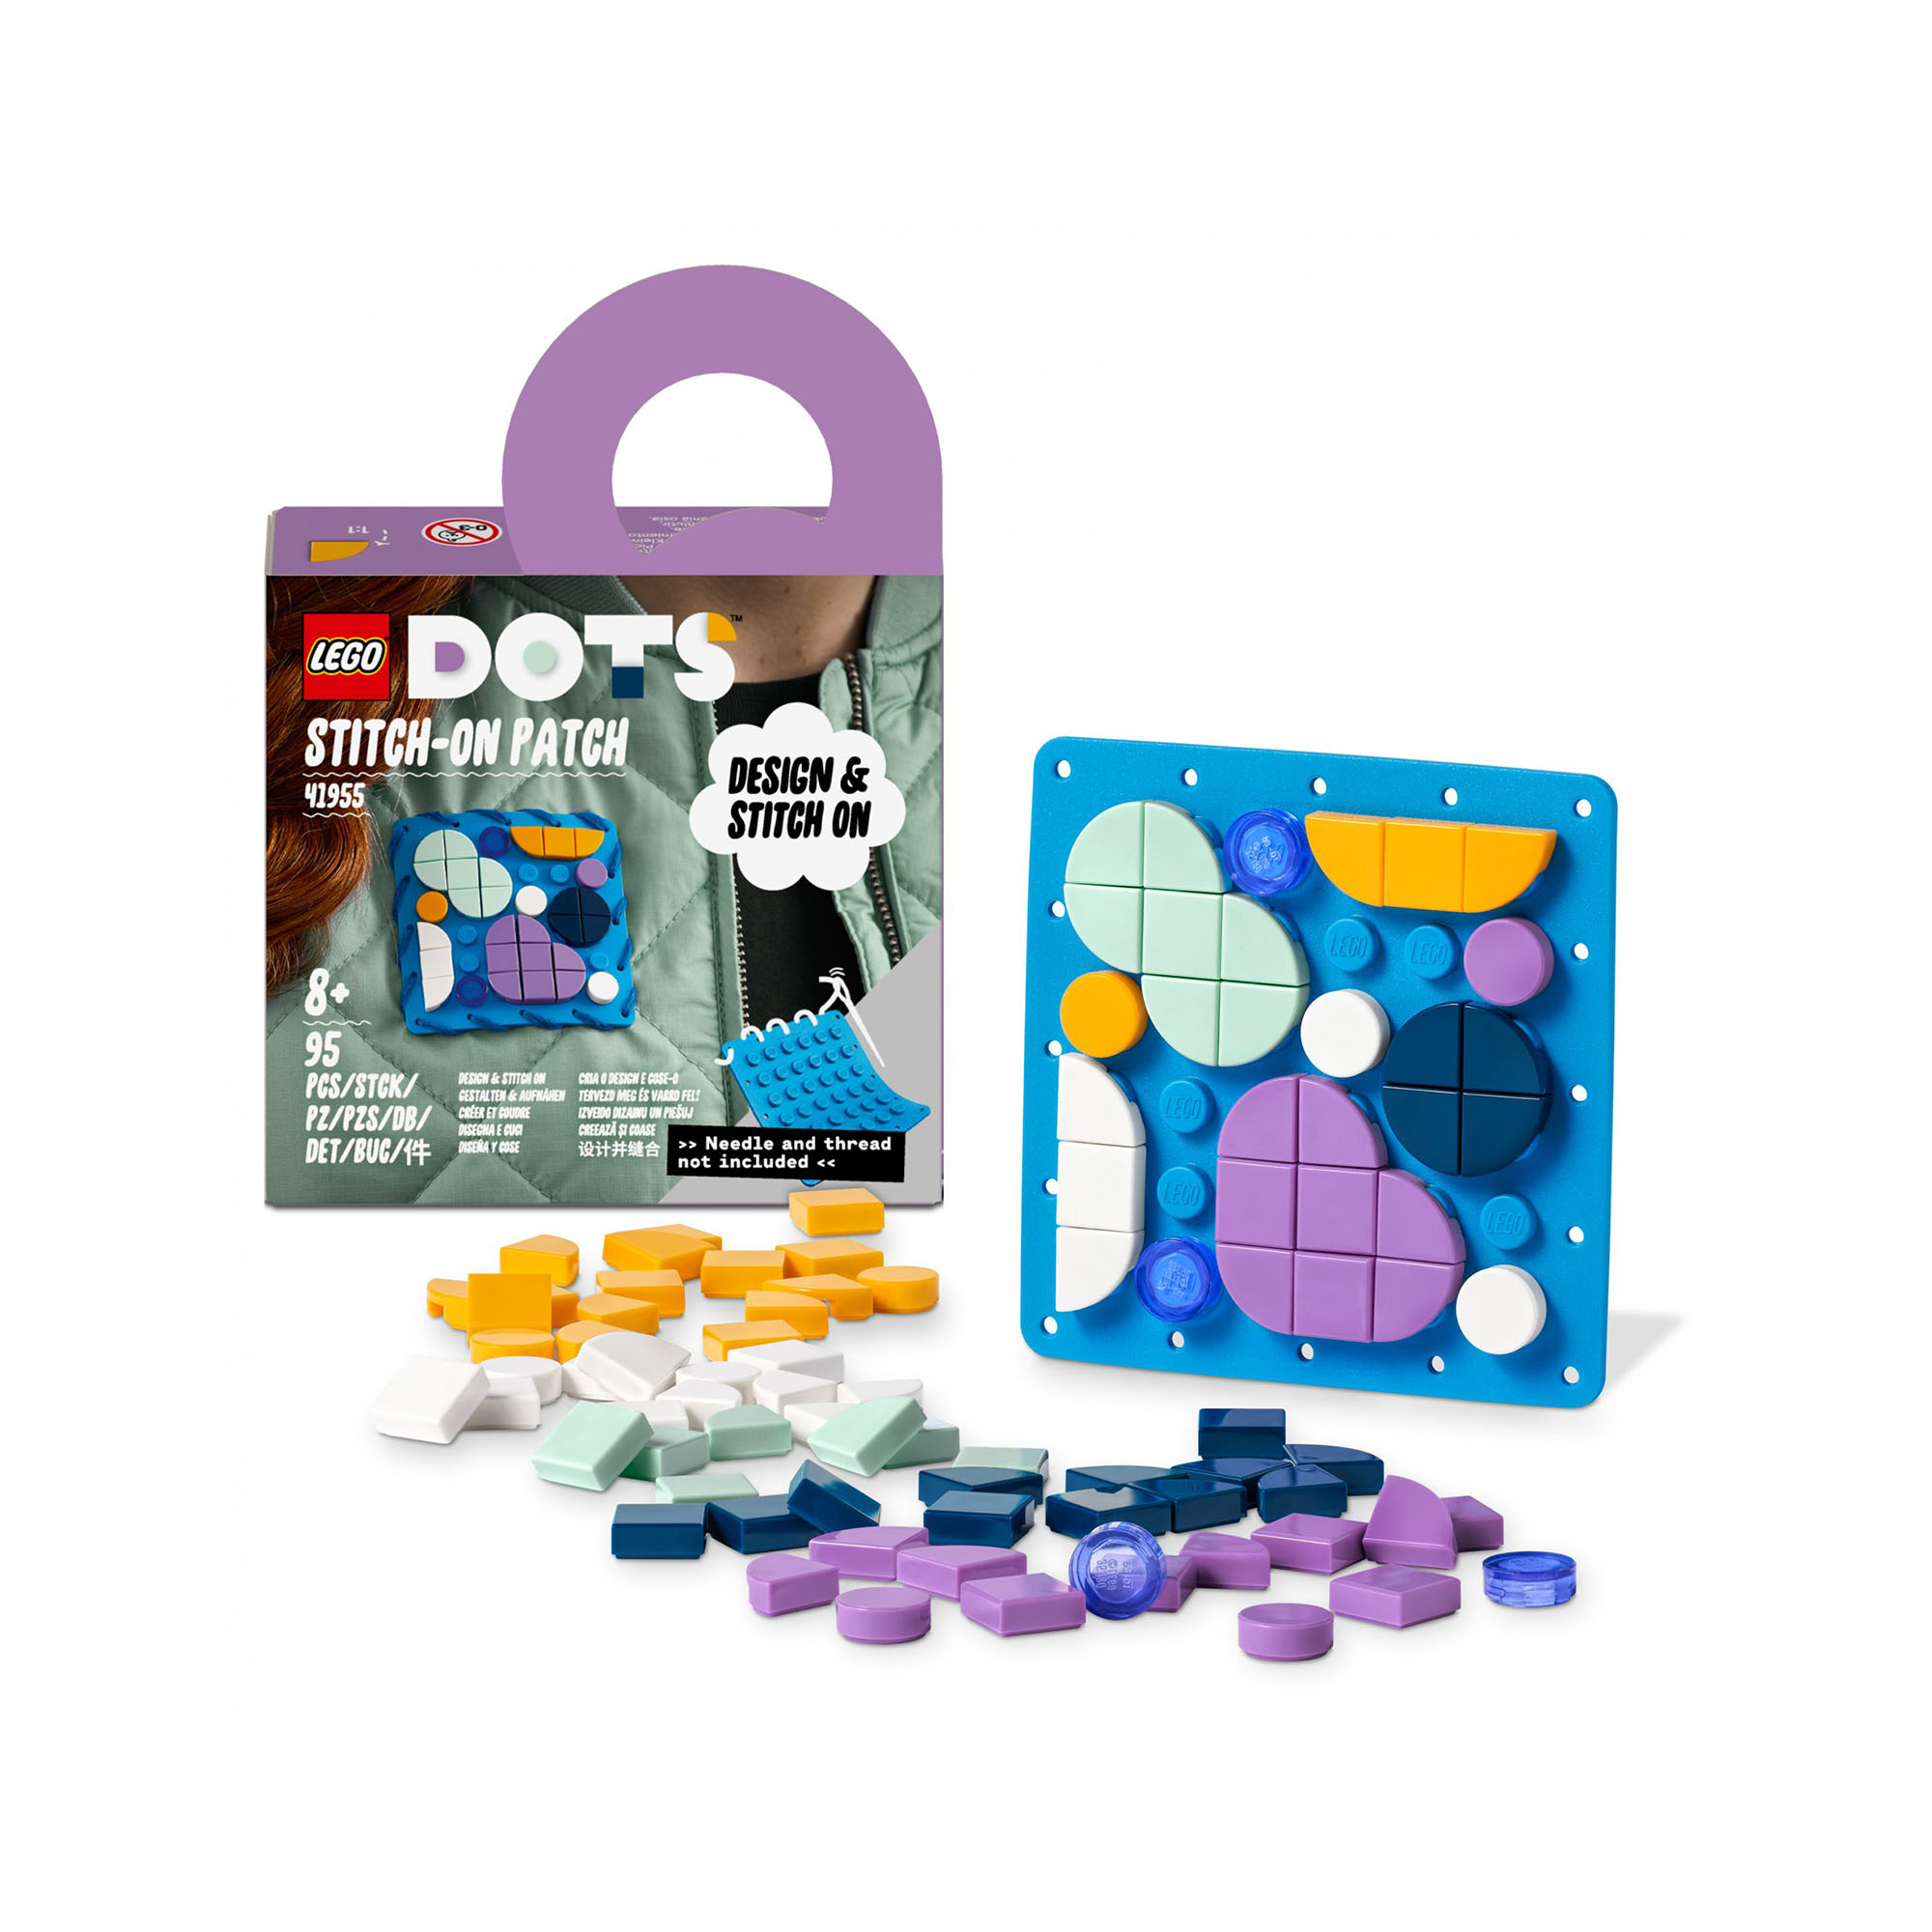 LEGO DOTS Patch Cucibile, Set Fai da Te con Toppa da Cucire per Vestiti o Access 41955, , large